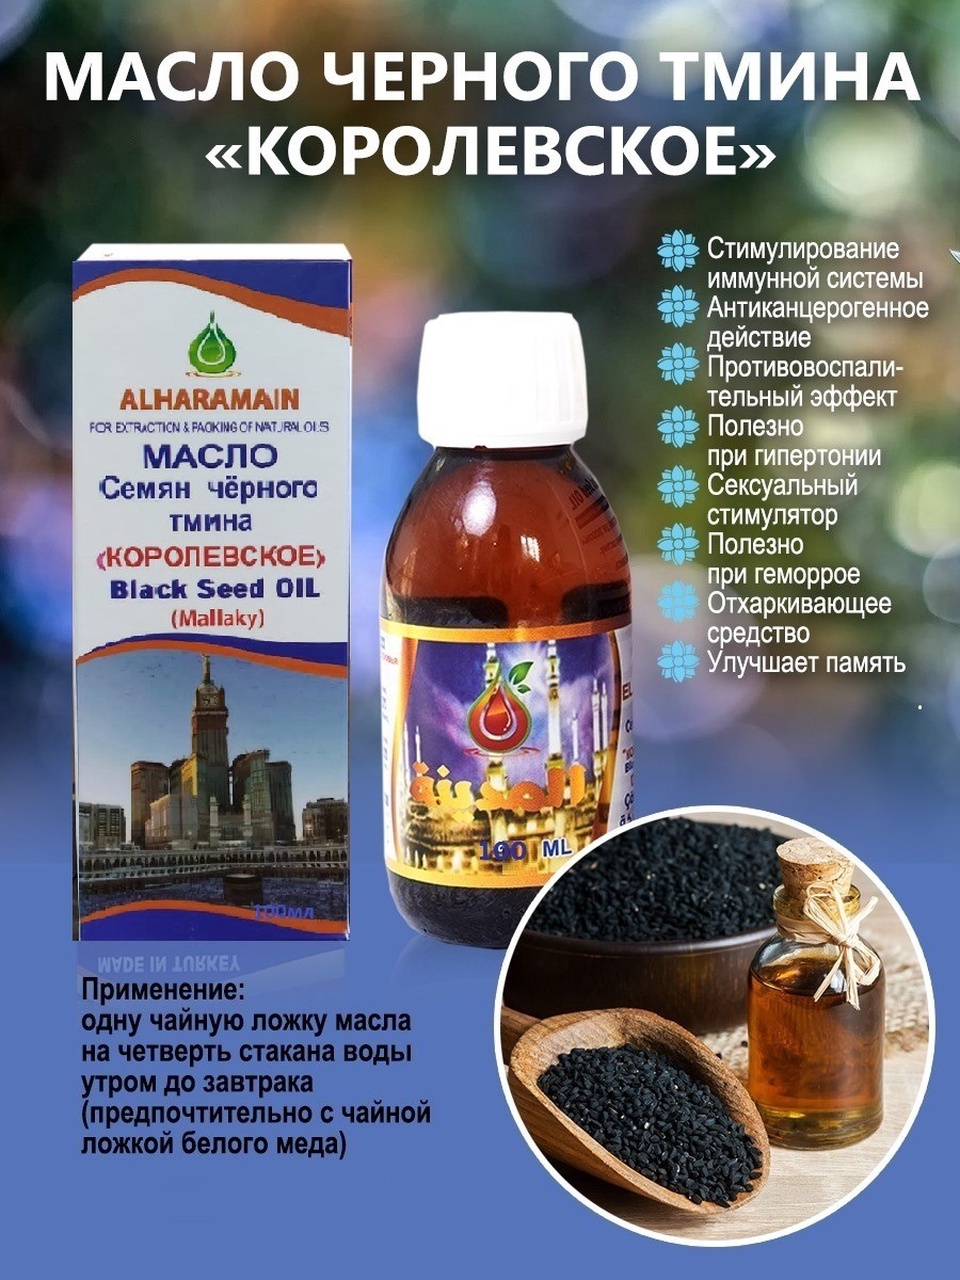 Масло семян чёрного тмина королевское 100 мл - 300 ₽, заказать онлайн.